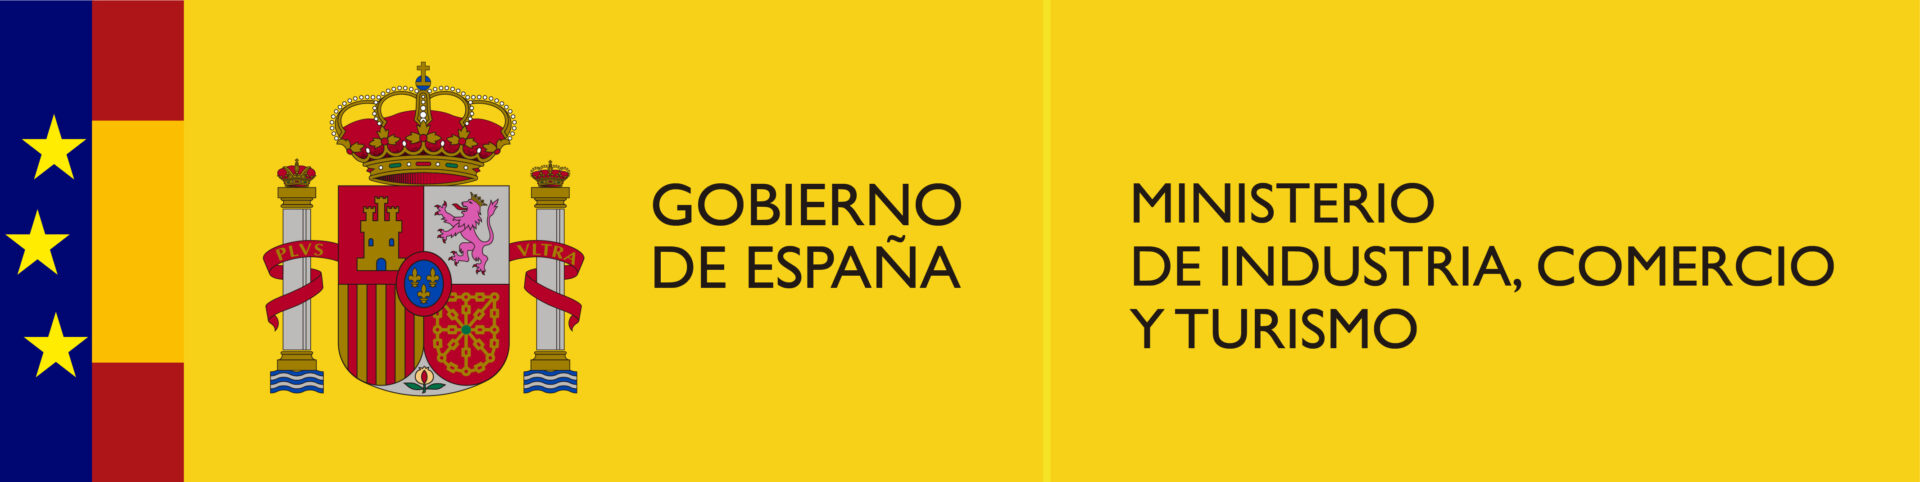 Gobierno de España, Ministerio de Industria, Comercio y Turismo